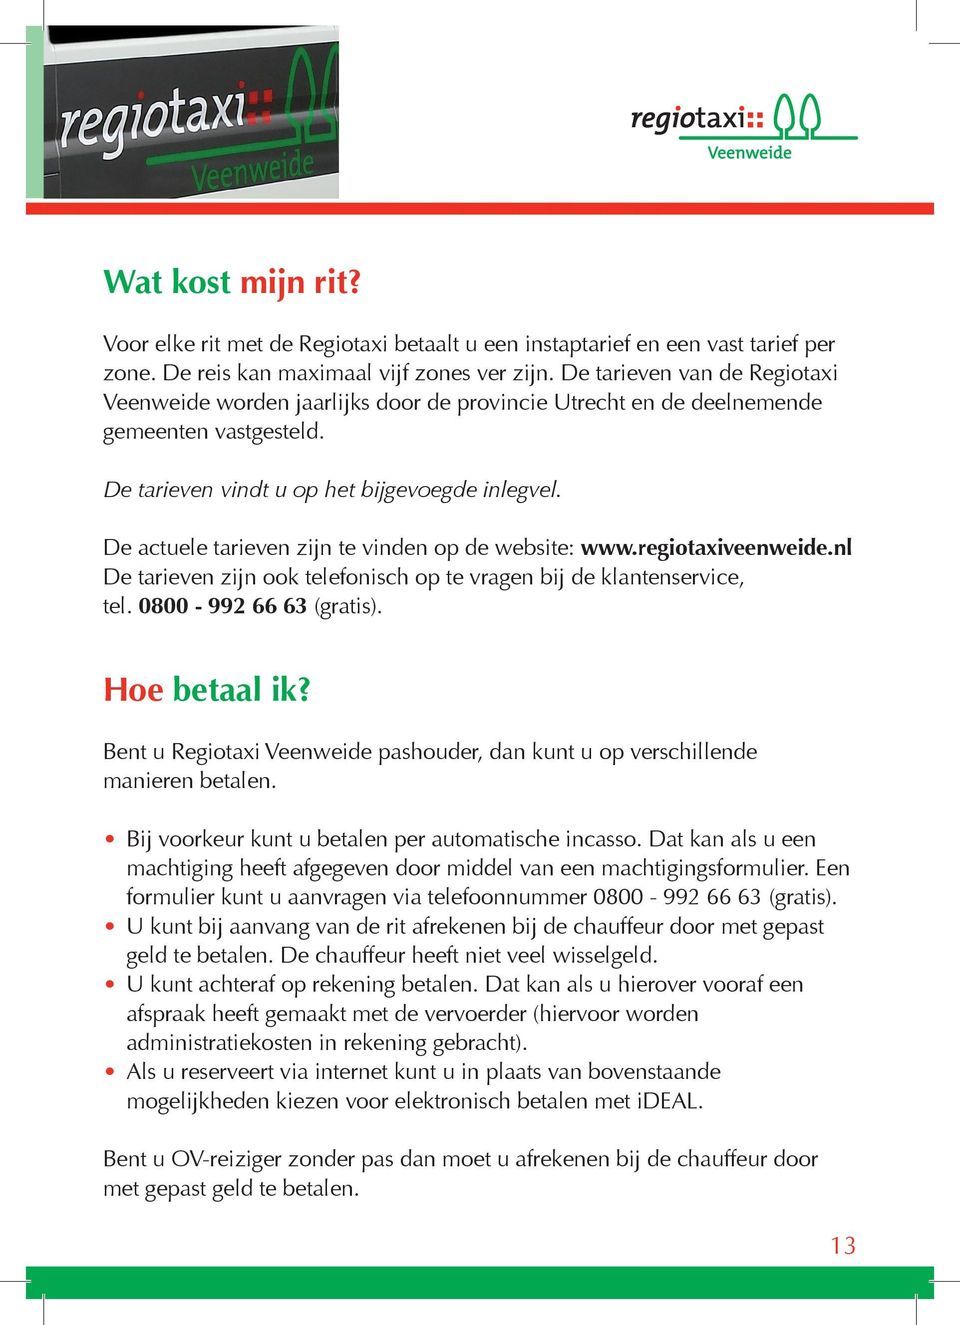 De actuele tarieven zijn te vinden op de website: www.regiotaxiveenweide.nl De tarieven zijn ook telefonisch op te vragen bij de klantenservice, tel. 0800-992 66 63 (gratis). Hoe betaal ik?